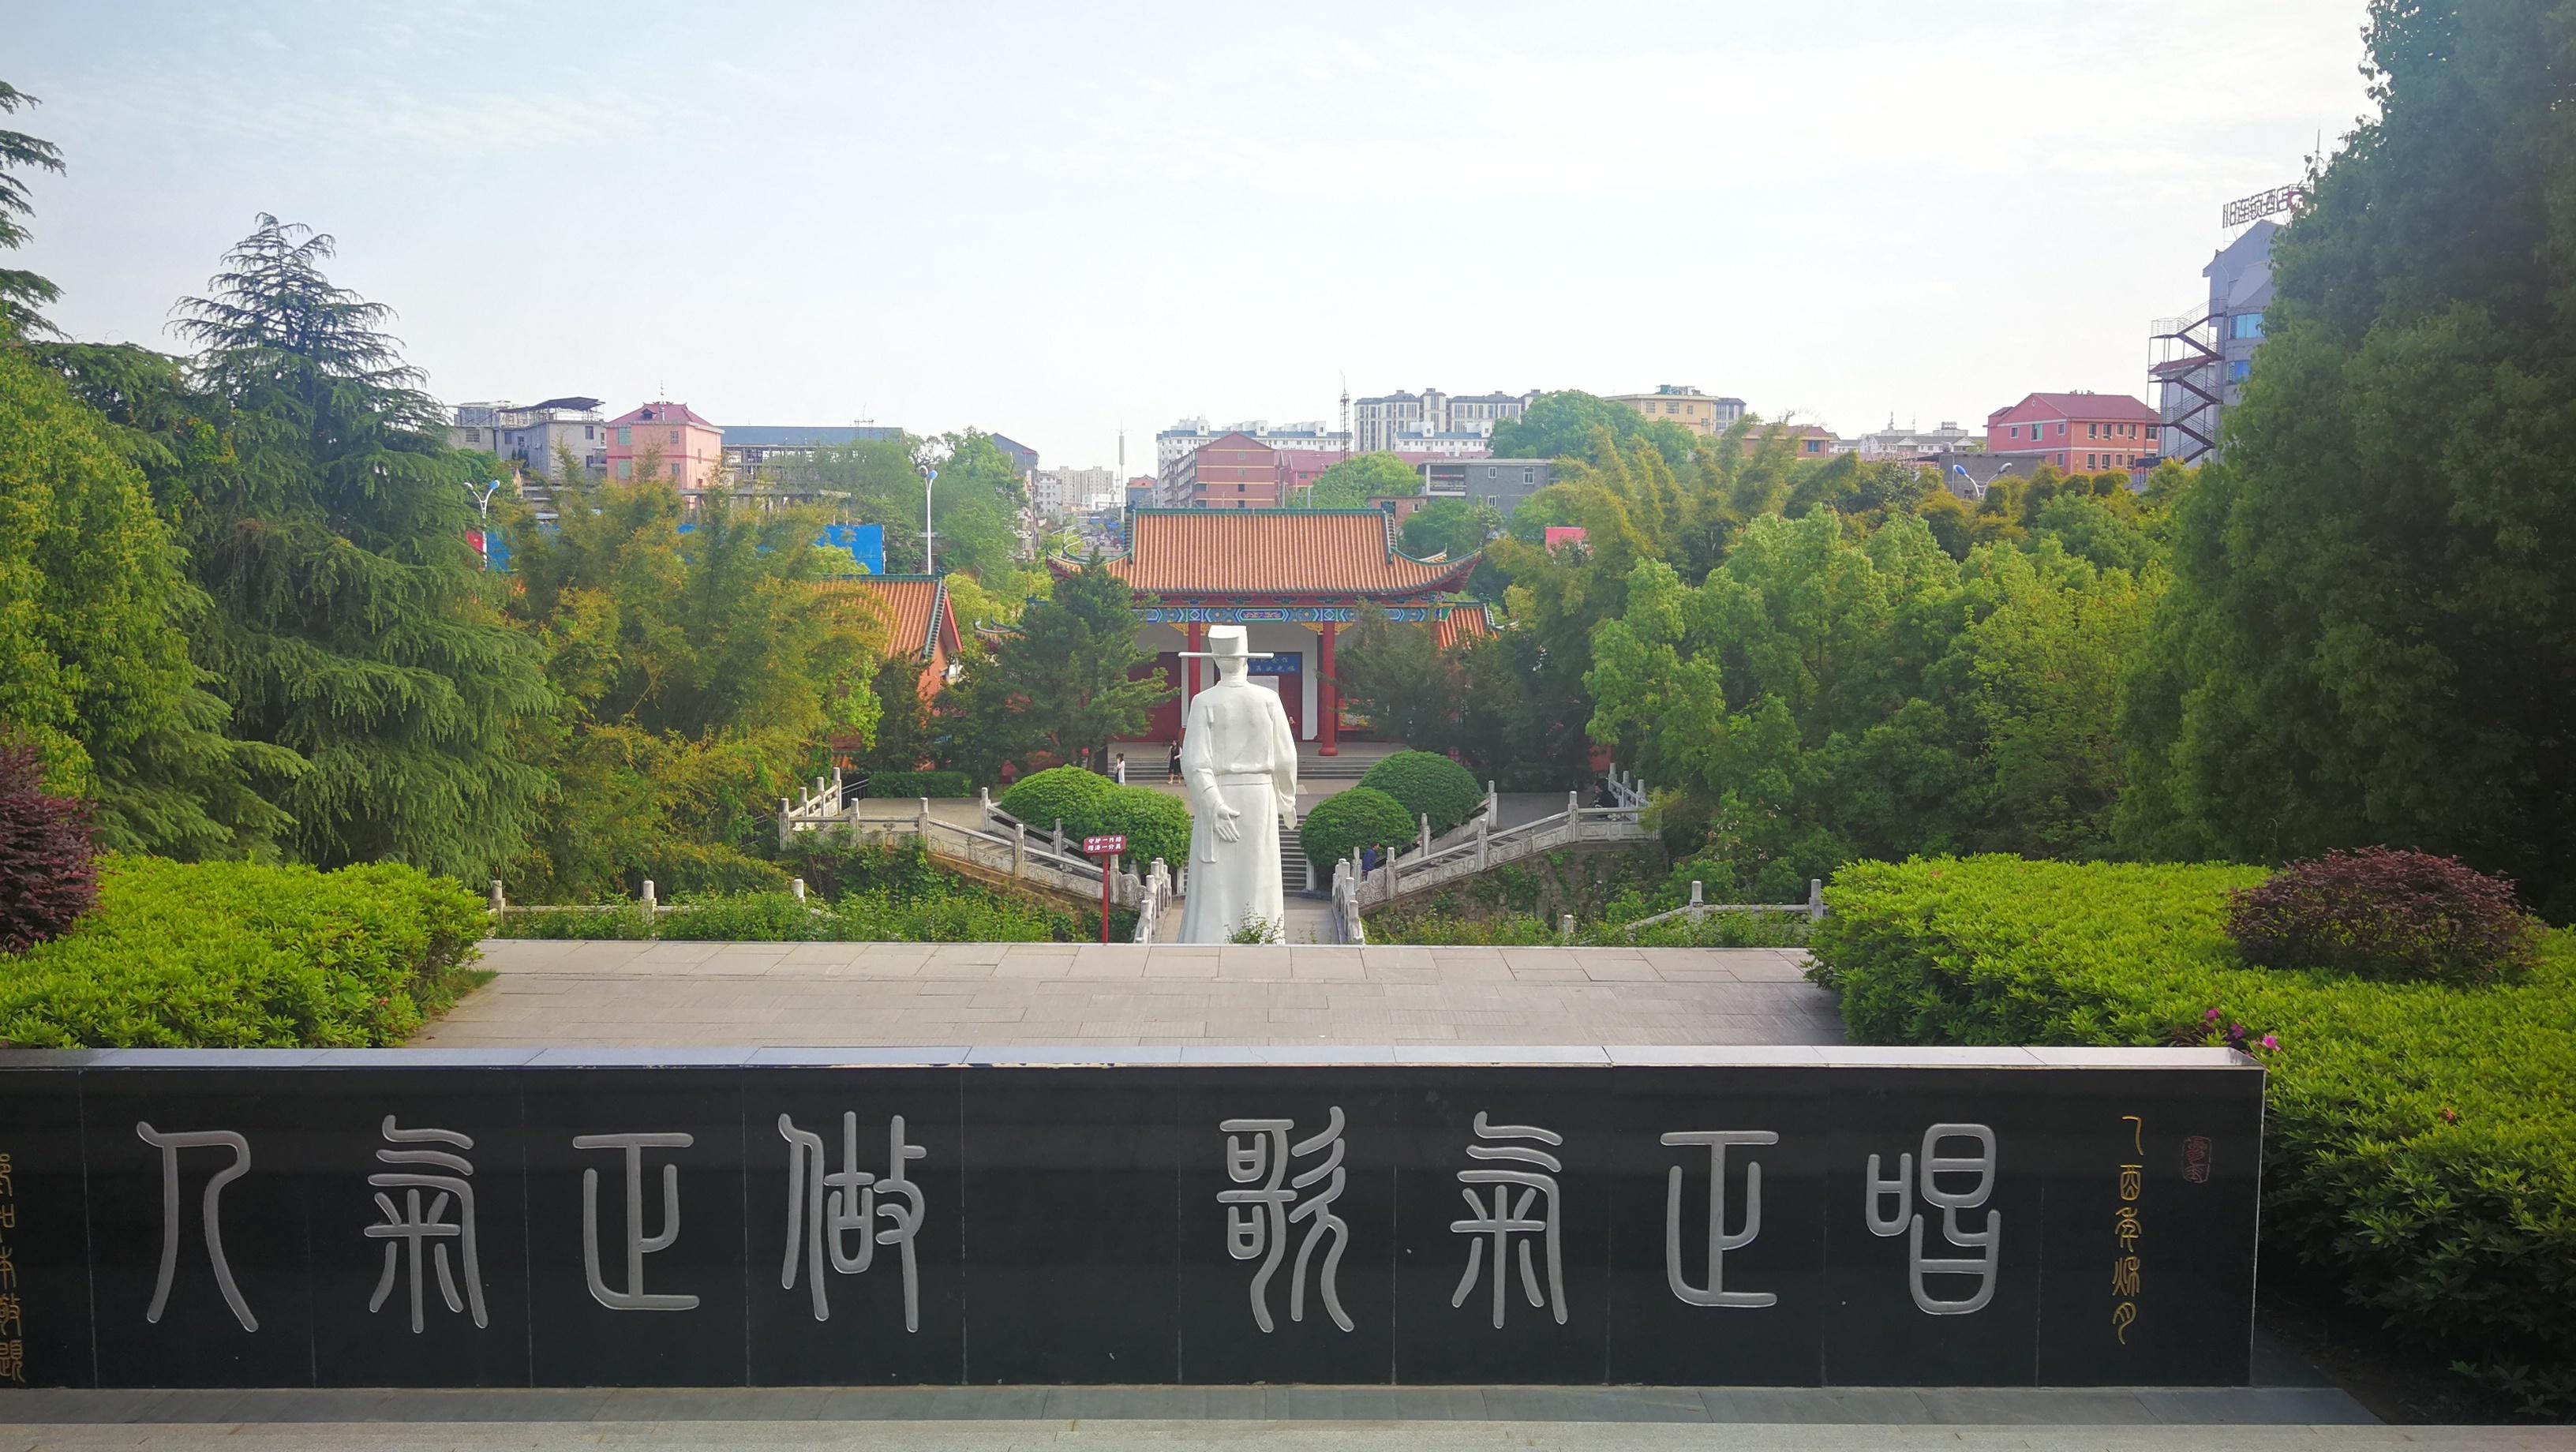 旅游在吉安:吉安县文天祥纪念馆